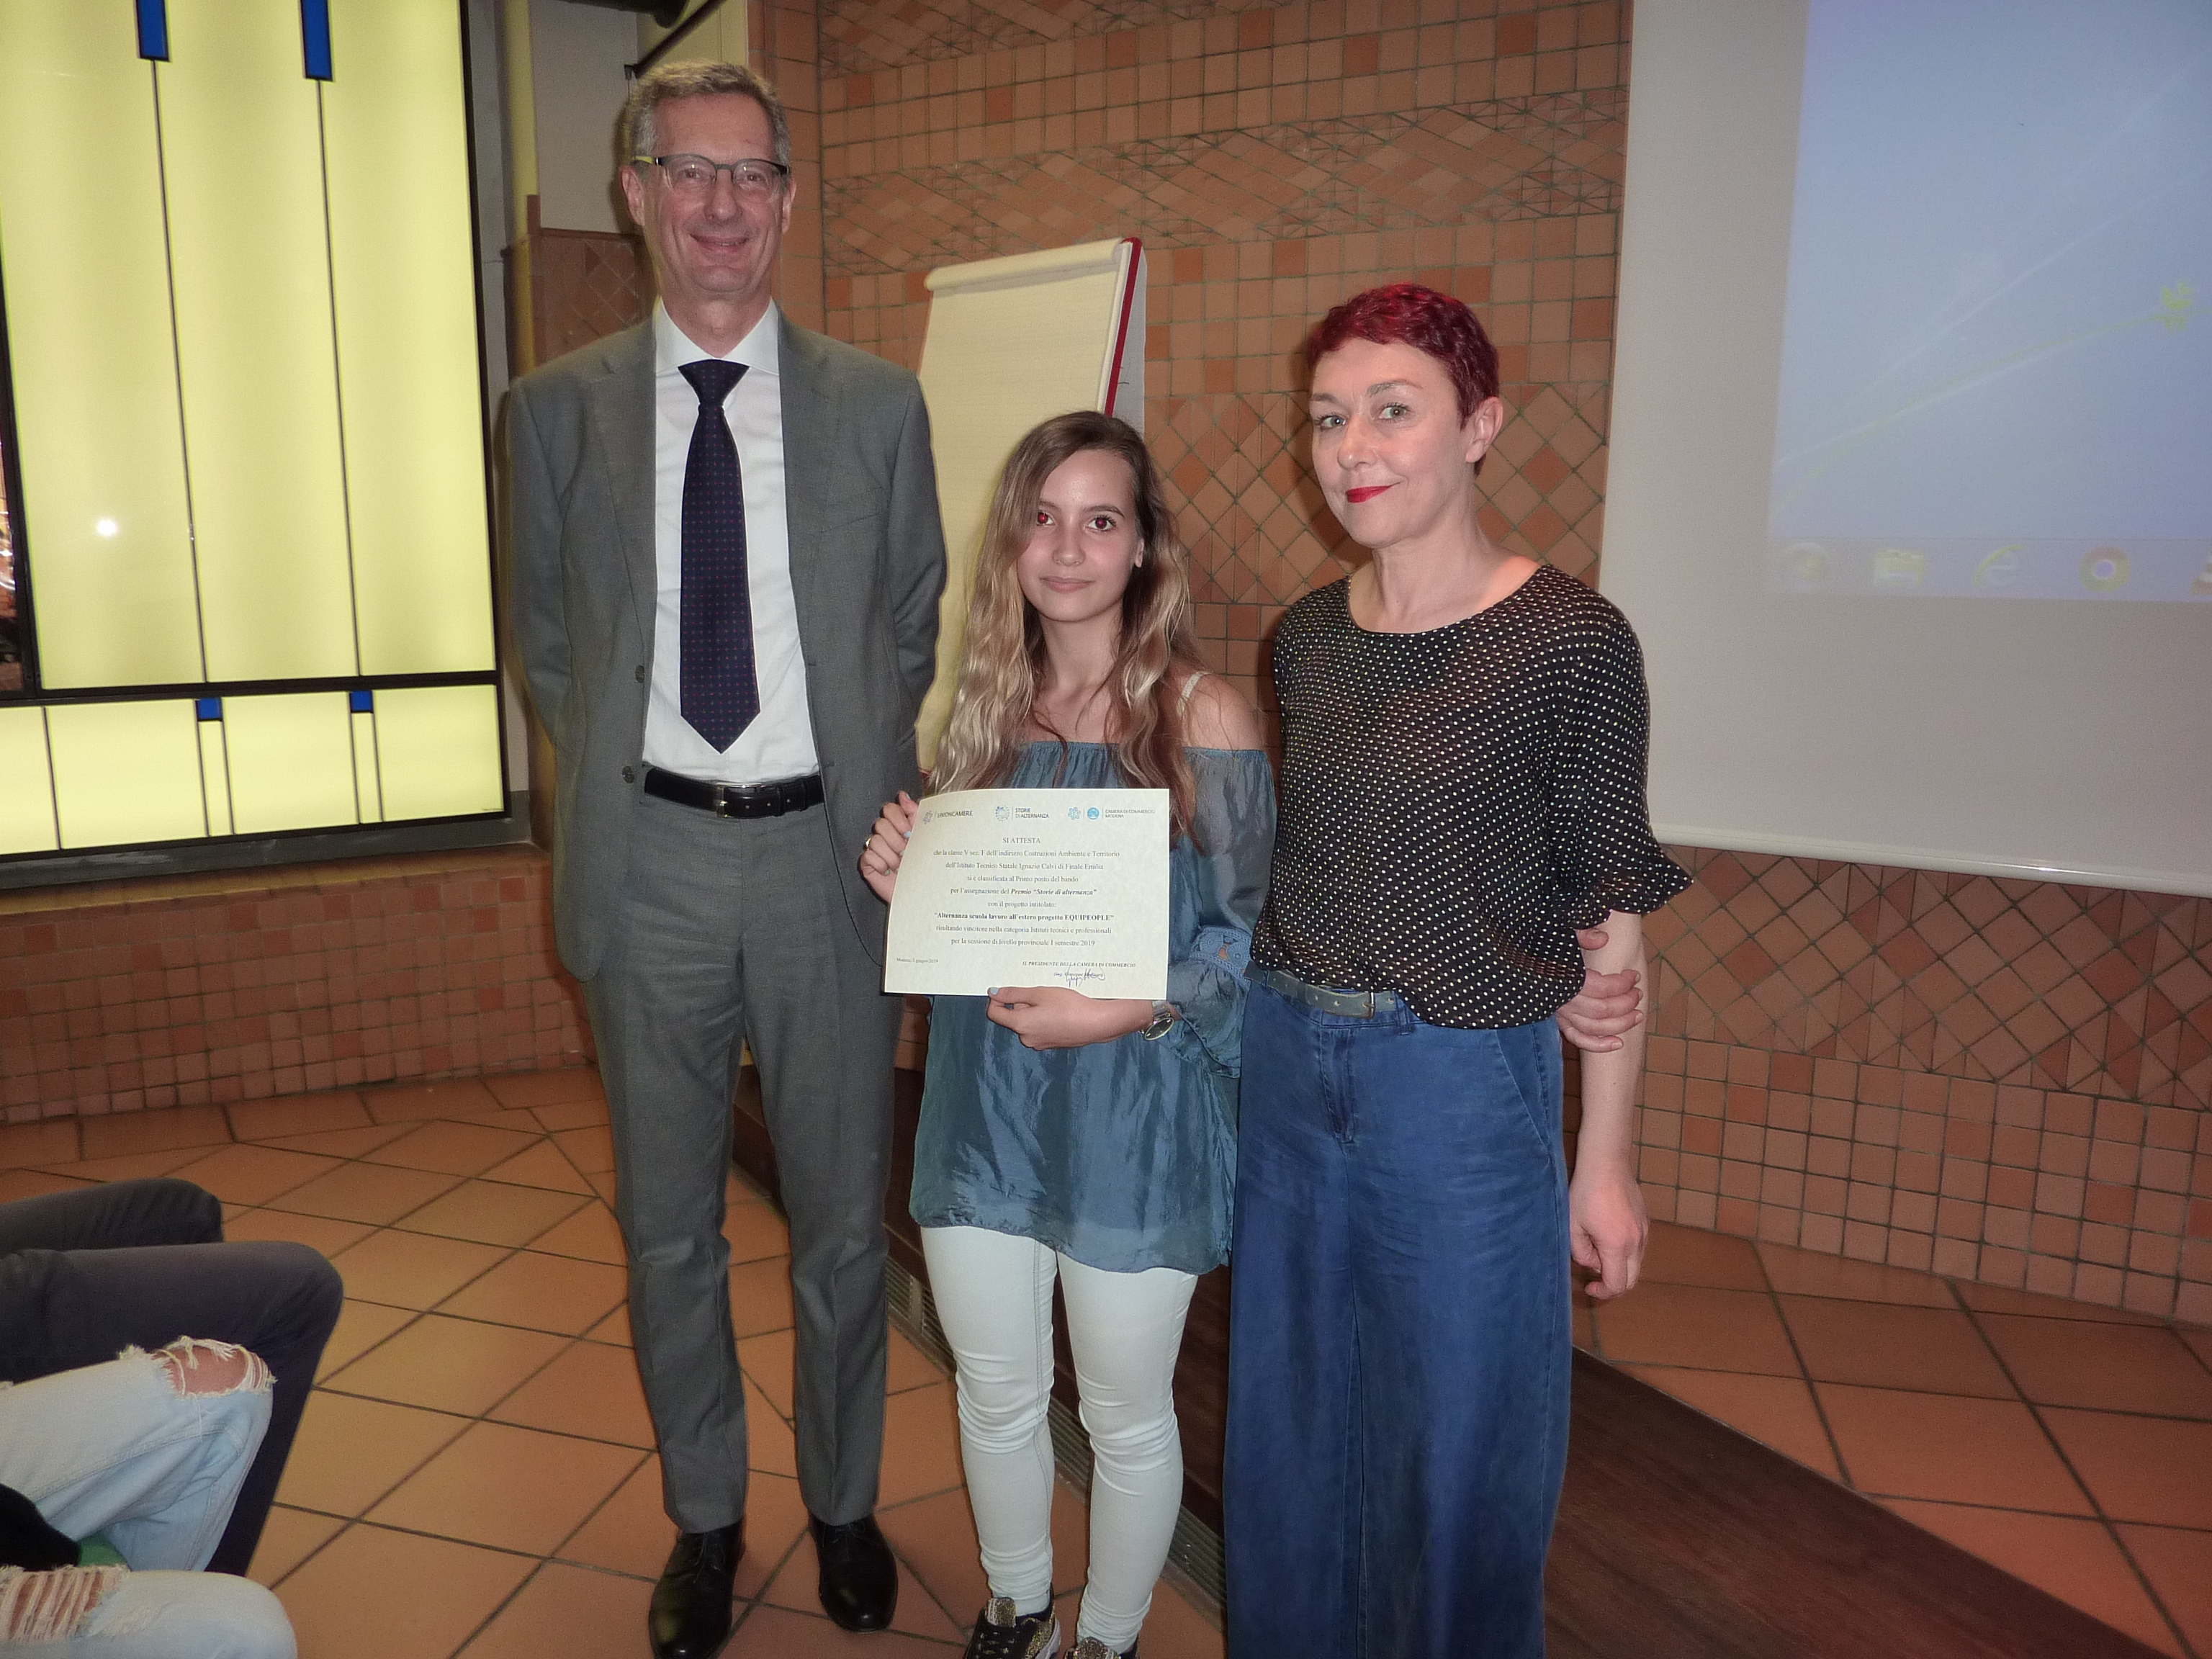 Premio "Storie di alternanza" 2019 - Istituto Calvi